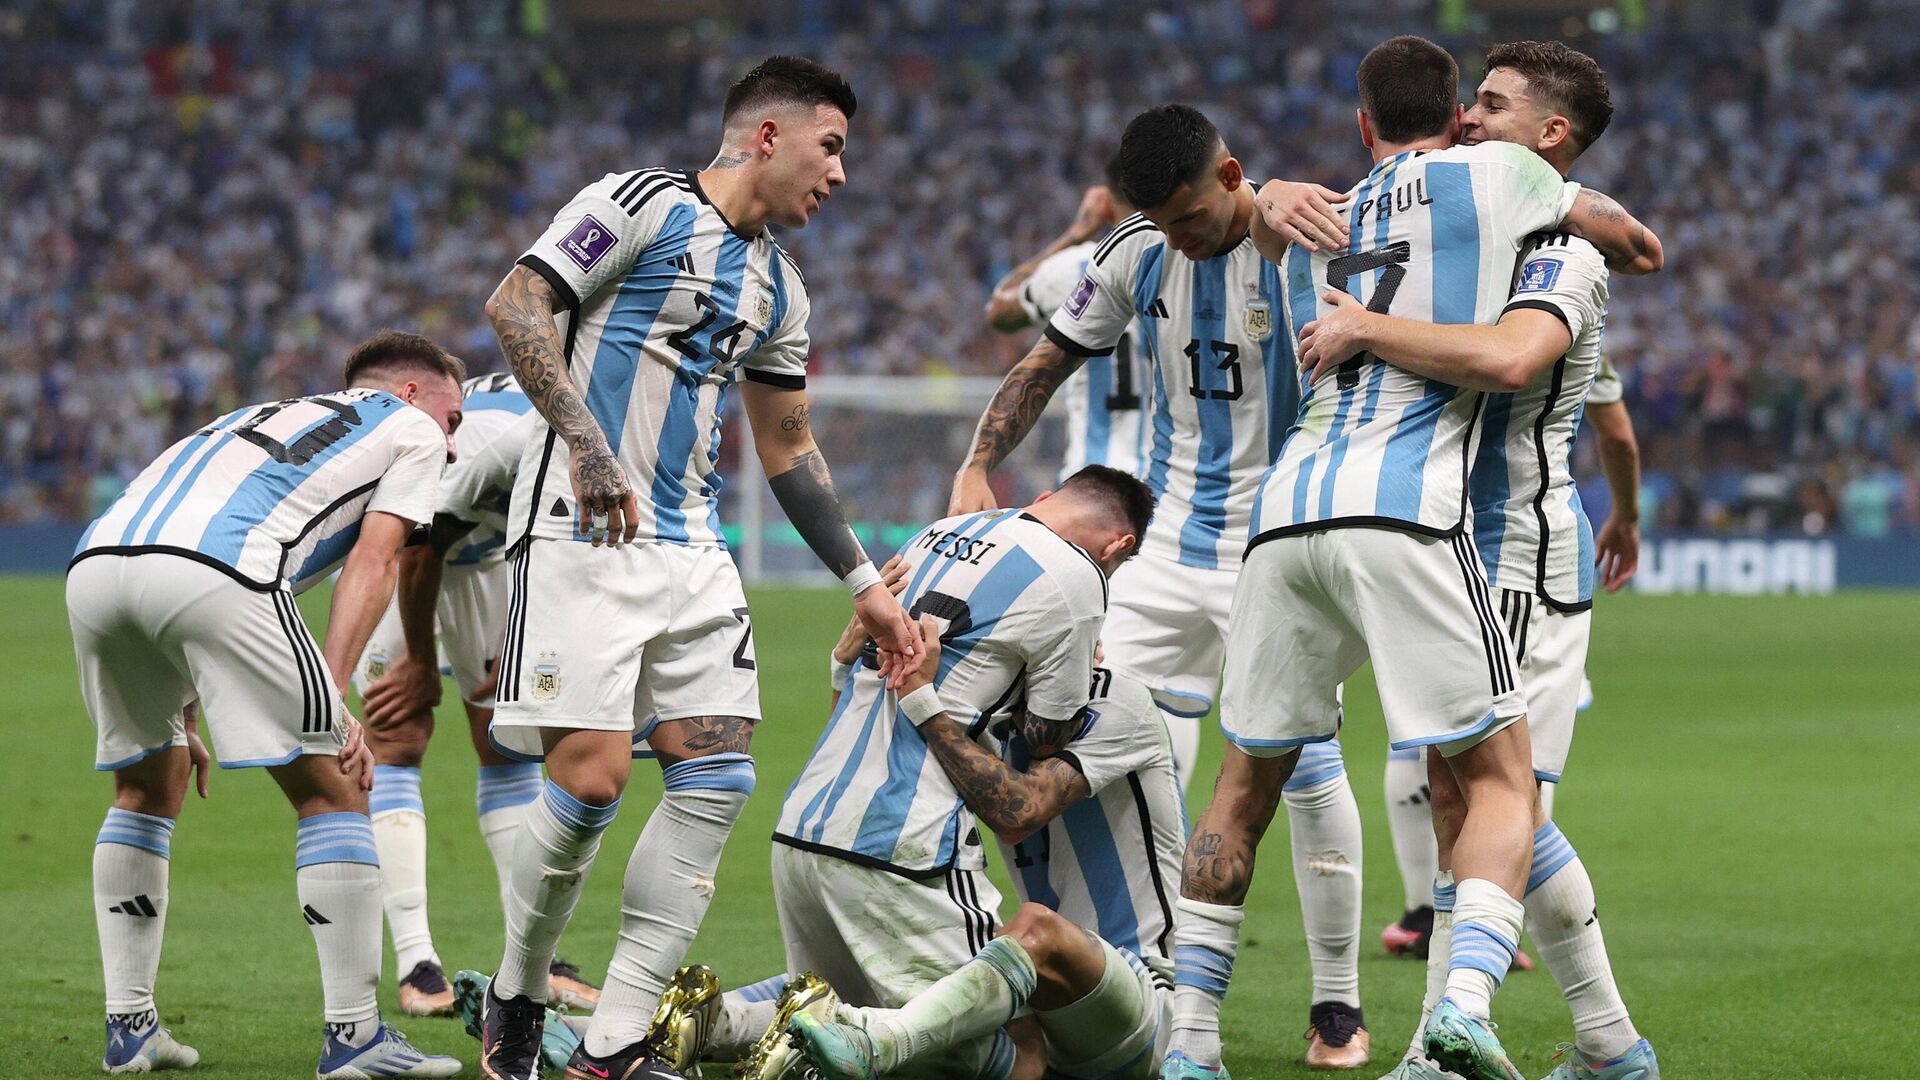 La selección argentina celebra el segundo gol de su equipo durante el partido de fútbol de la final de la Copa Mundial Catar 2022 entre Argentina y Francia.  - Sputnik Mundo, 1920, 22.12.2022